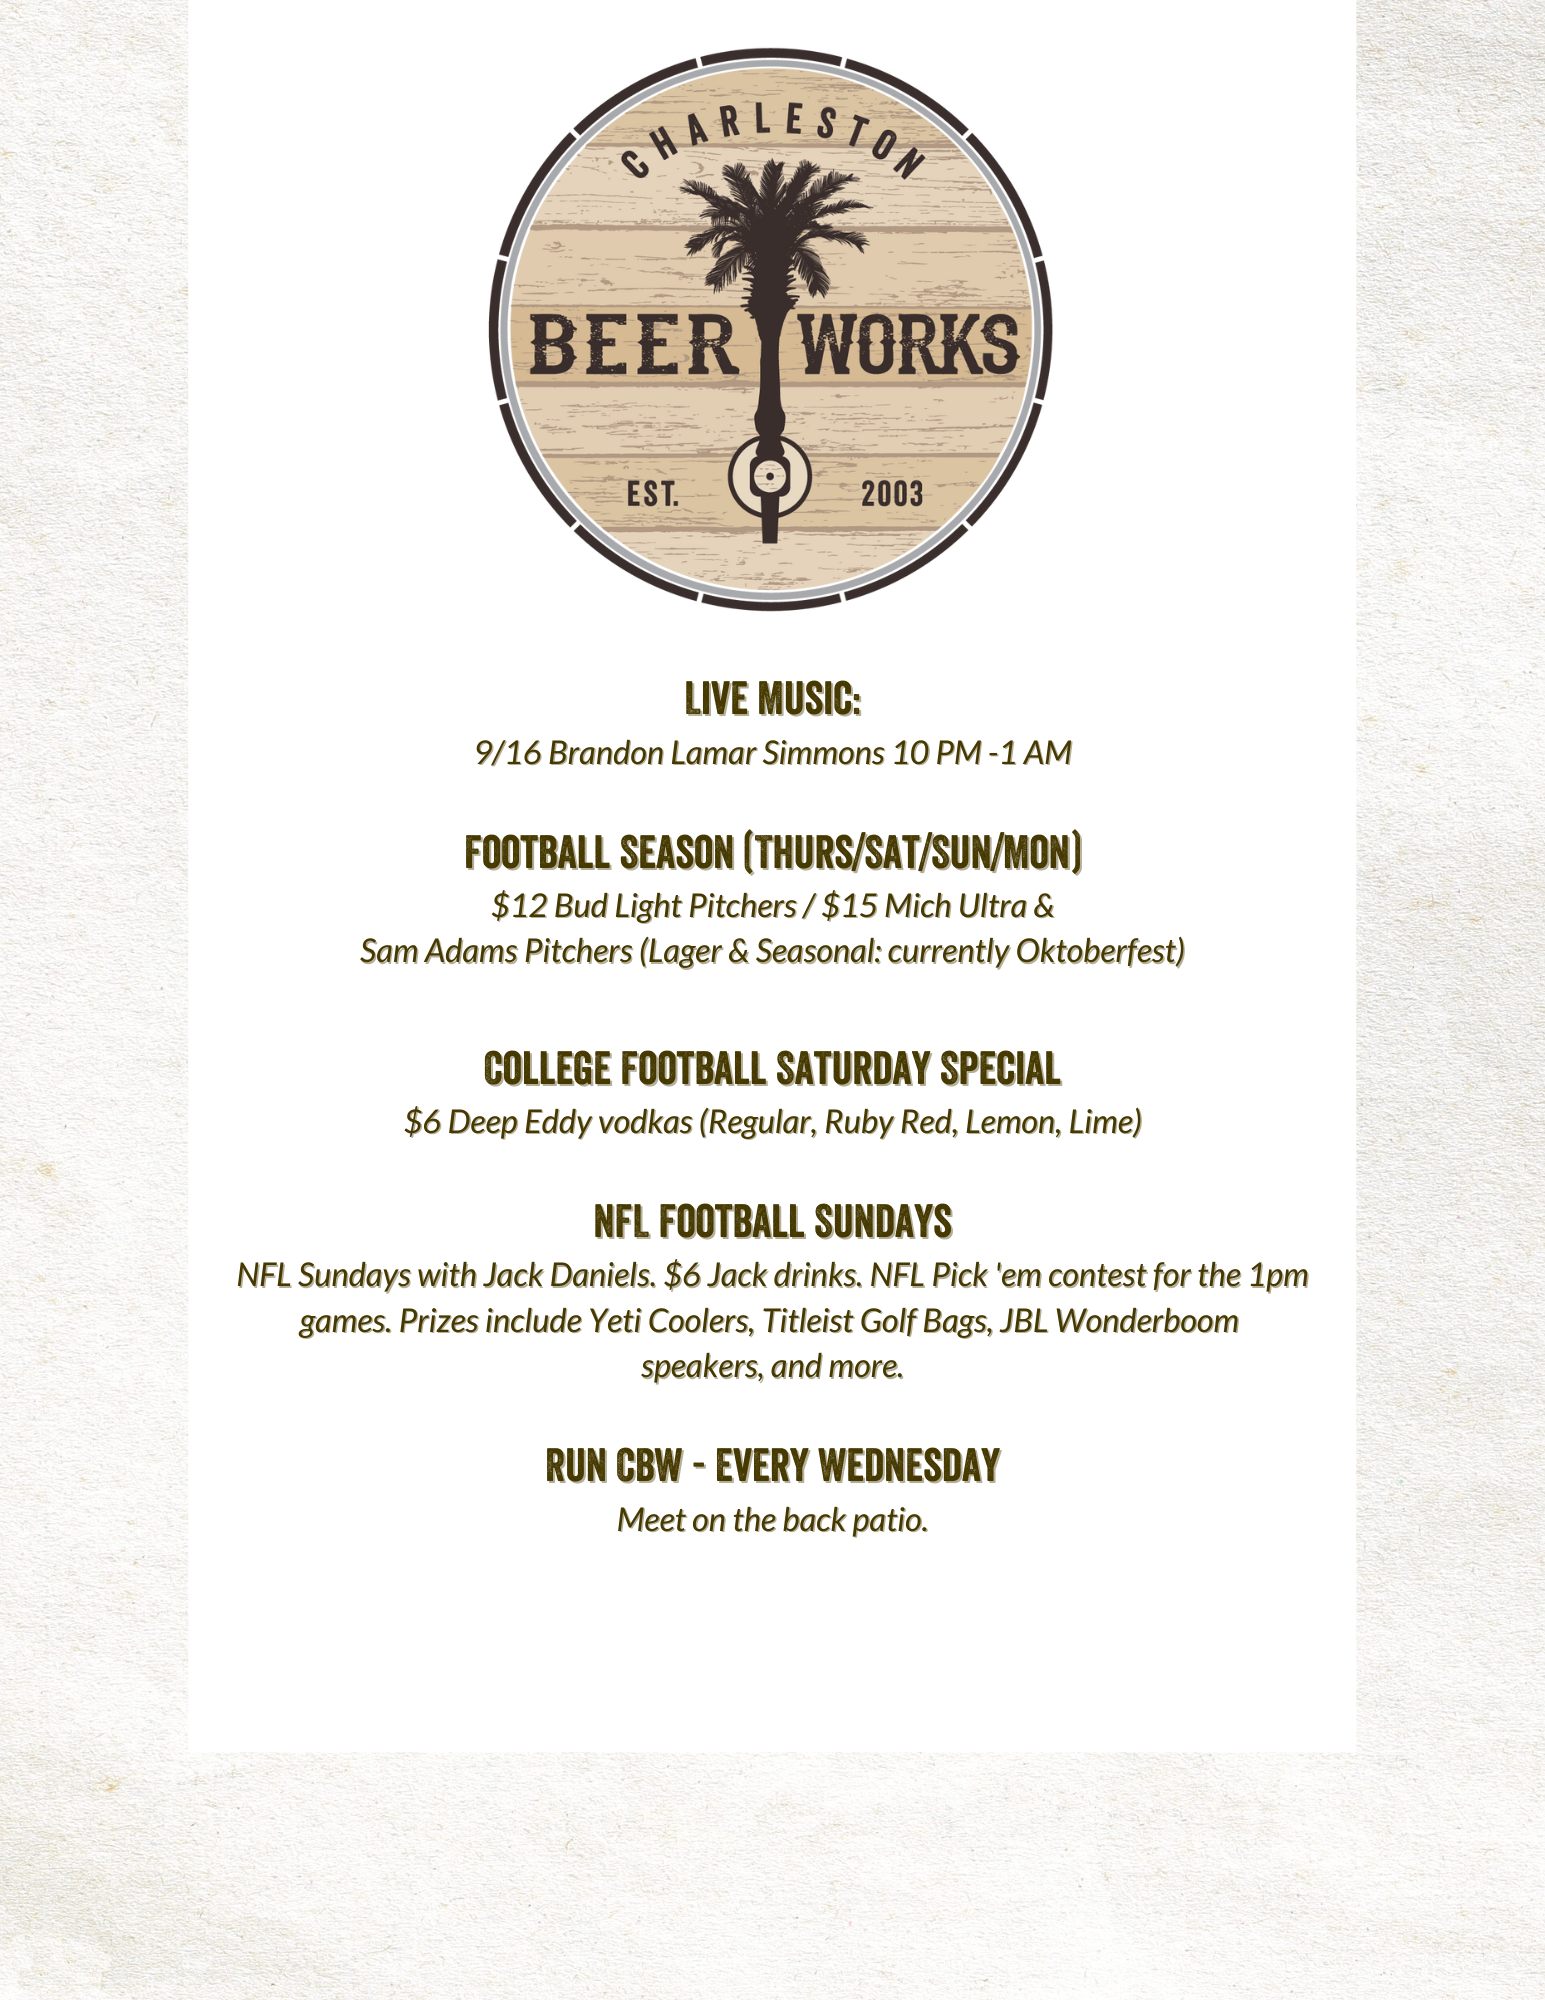 Charleston Beer Works Events (5)